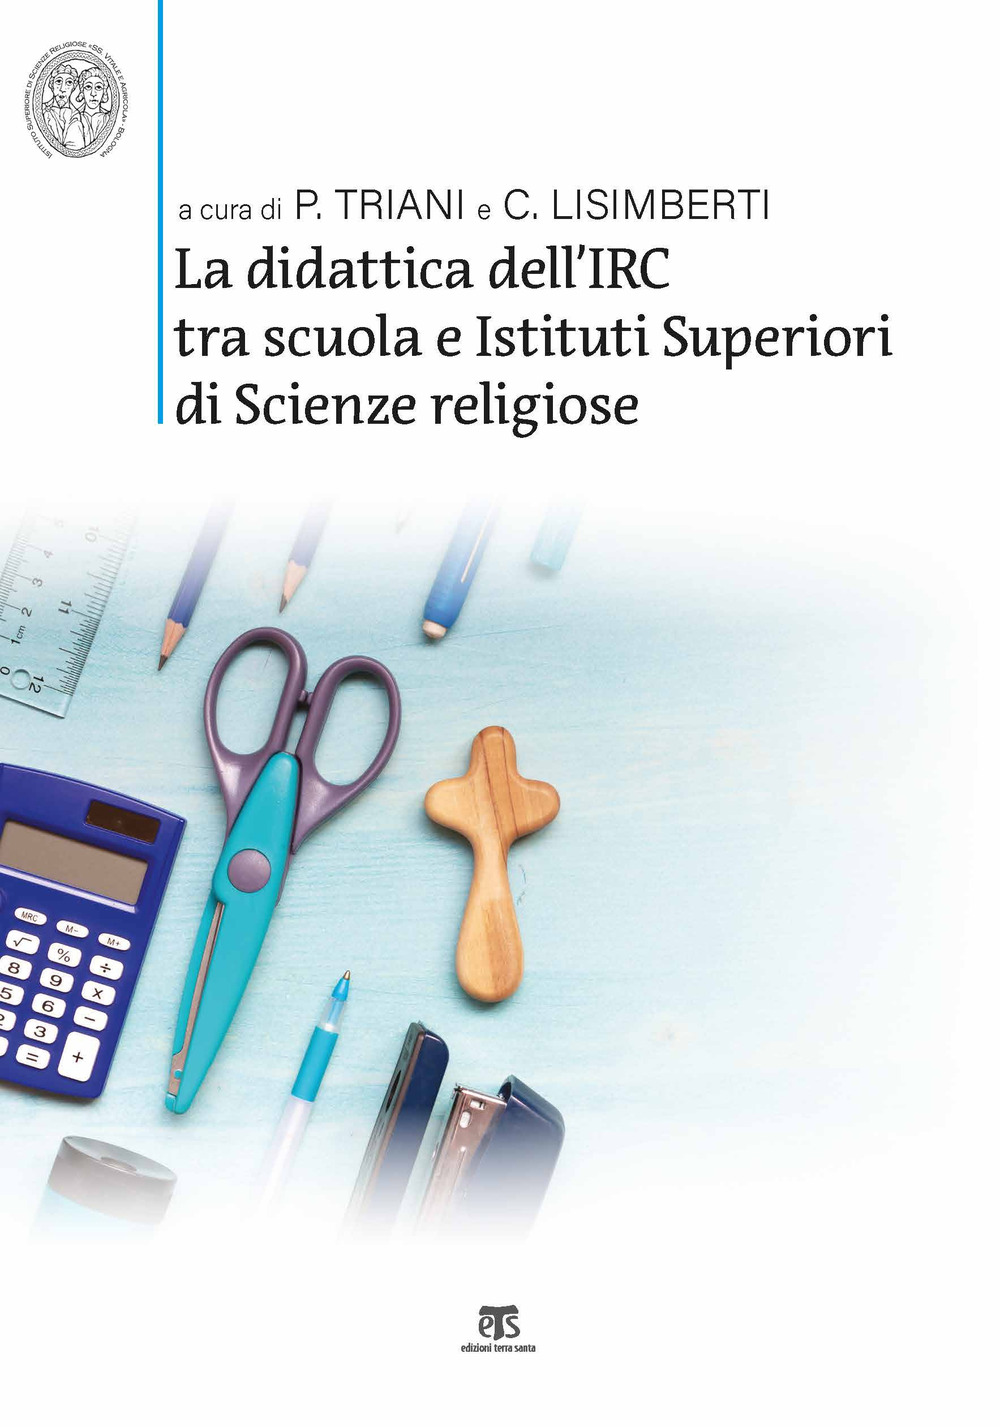 La didattica dell'IRC tra scuola e Istituti Superiori di Scienze Religiose. Verso nuovi modelli per la scuola delle competenze